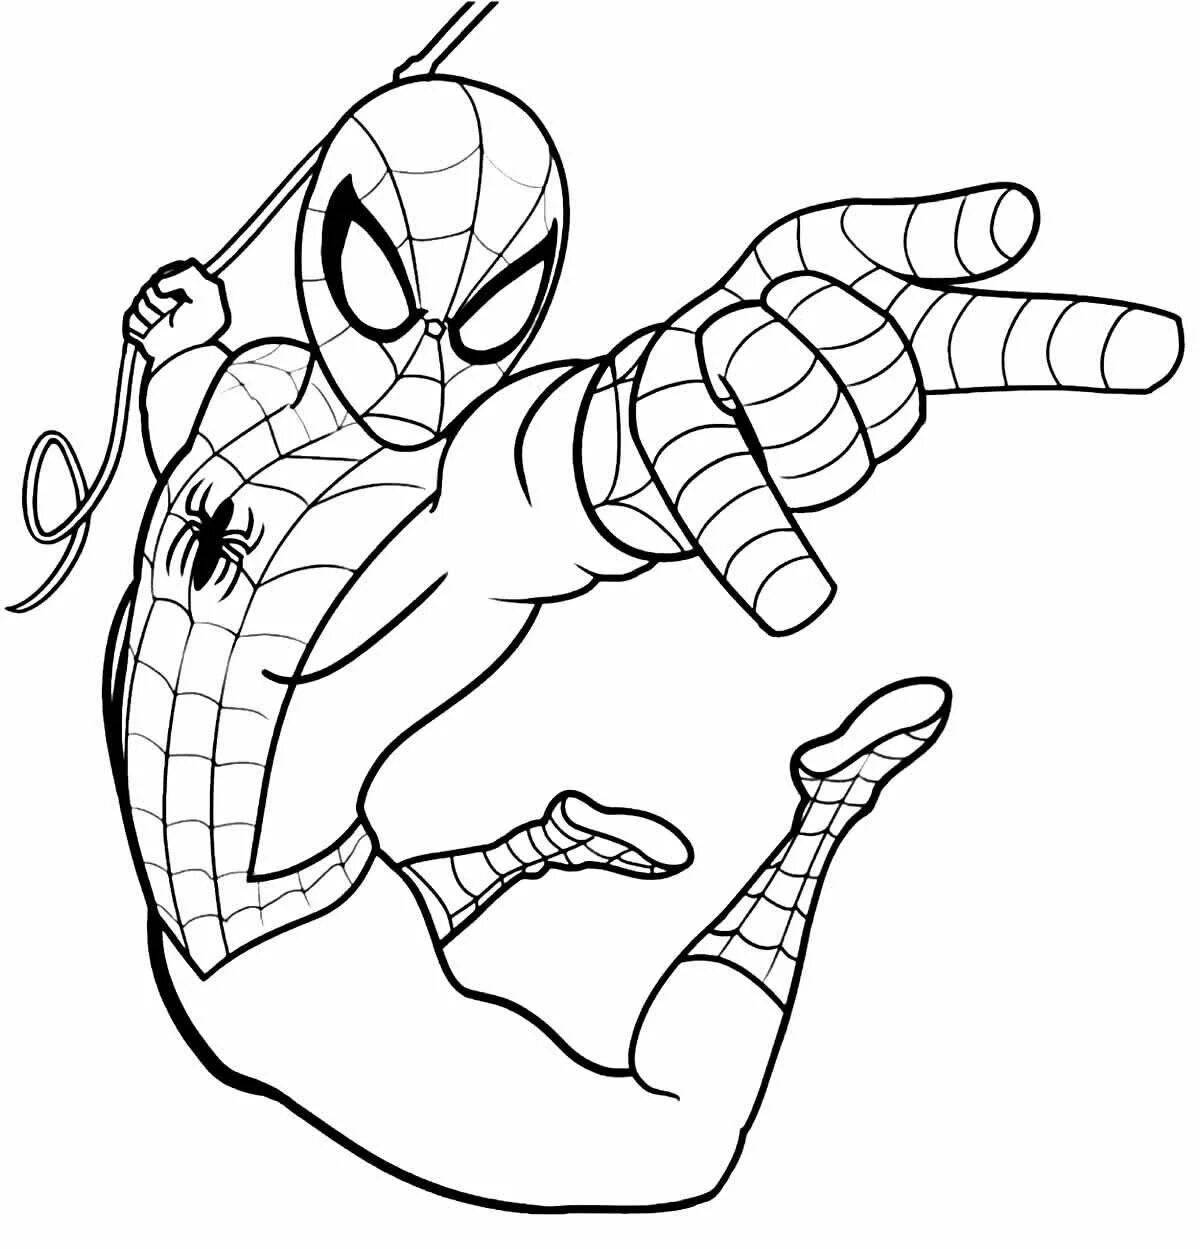 Energetic Spiderman turn on coloring